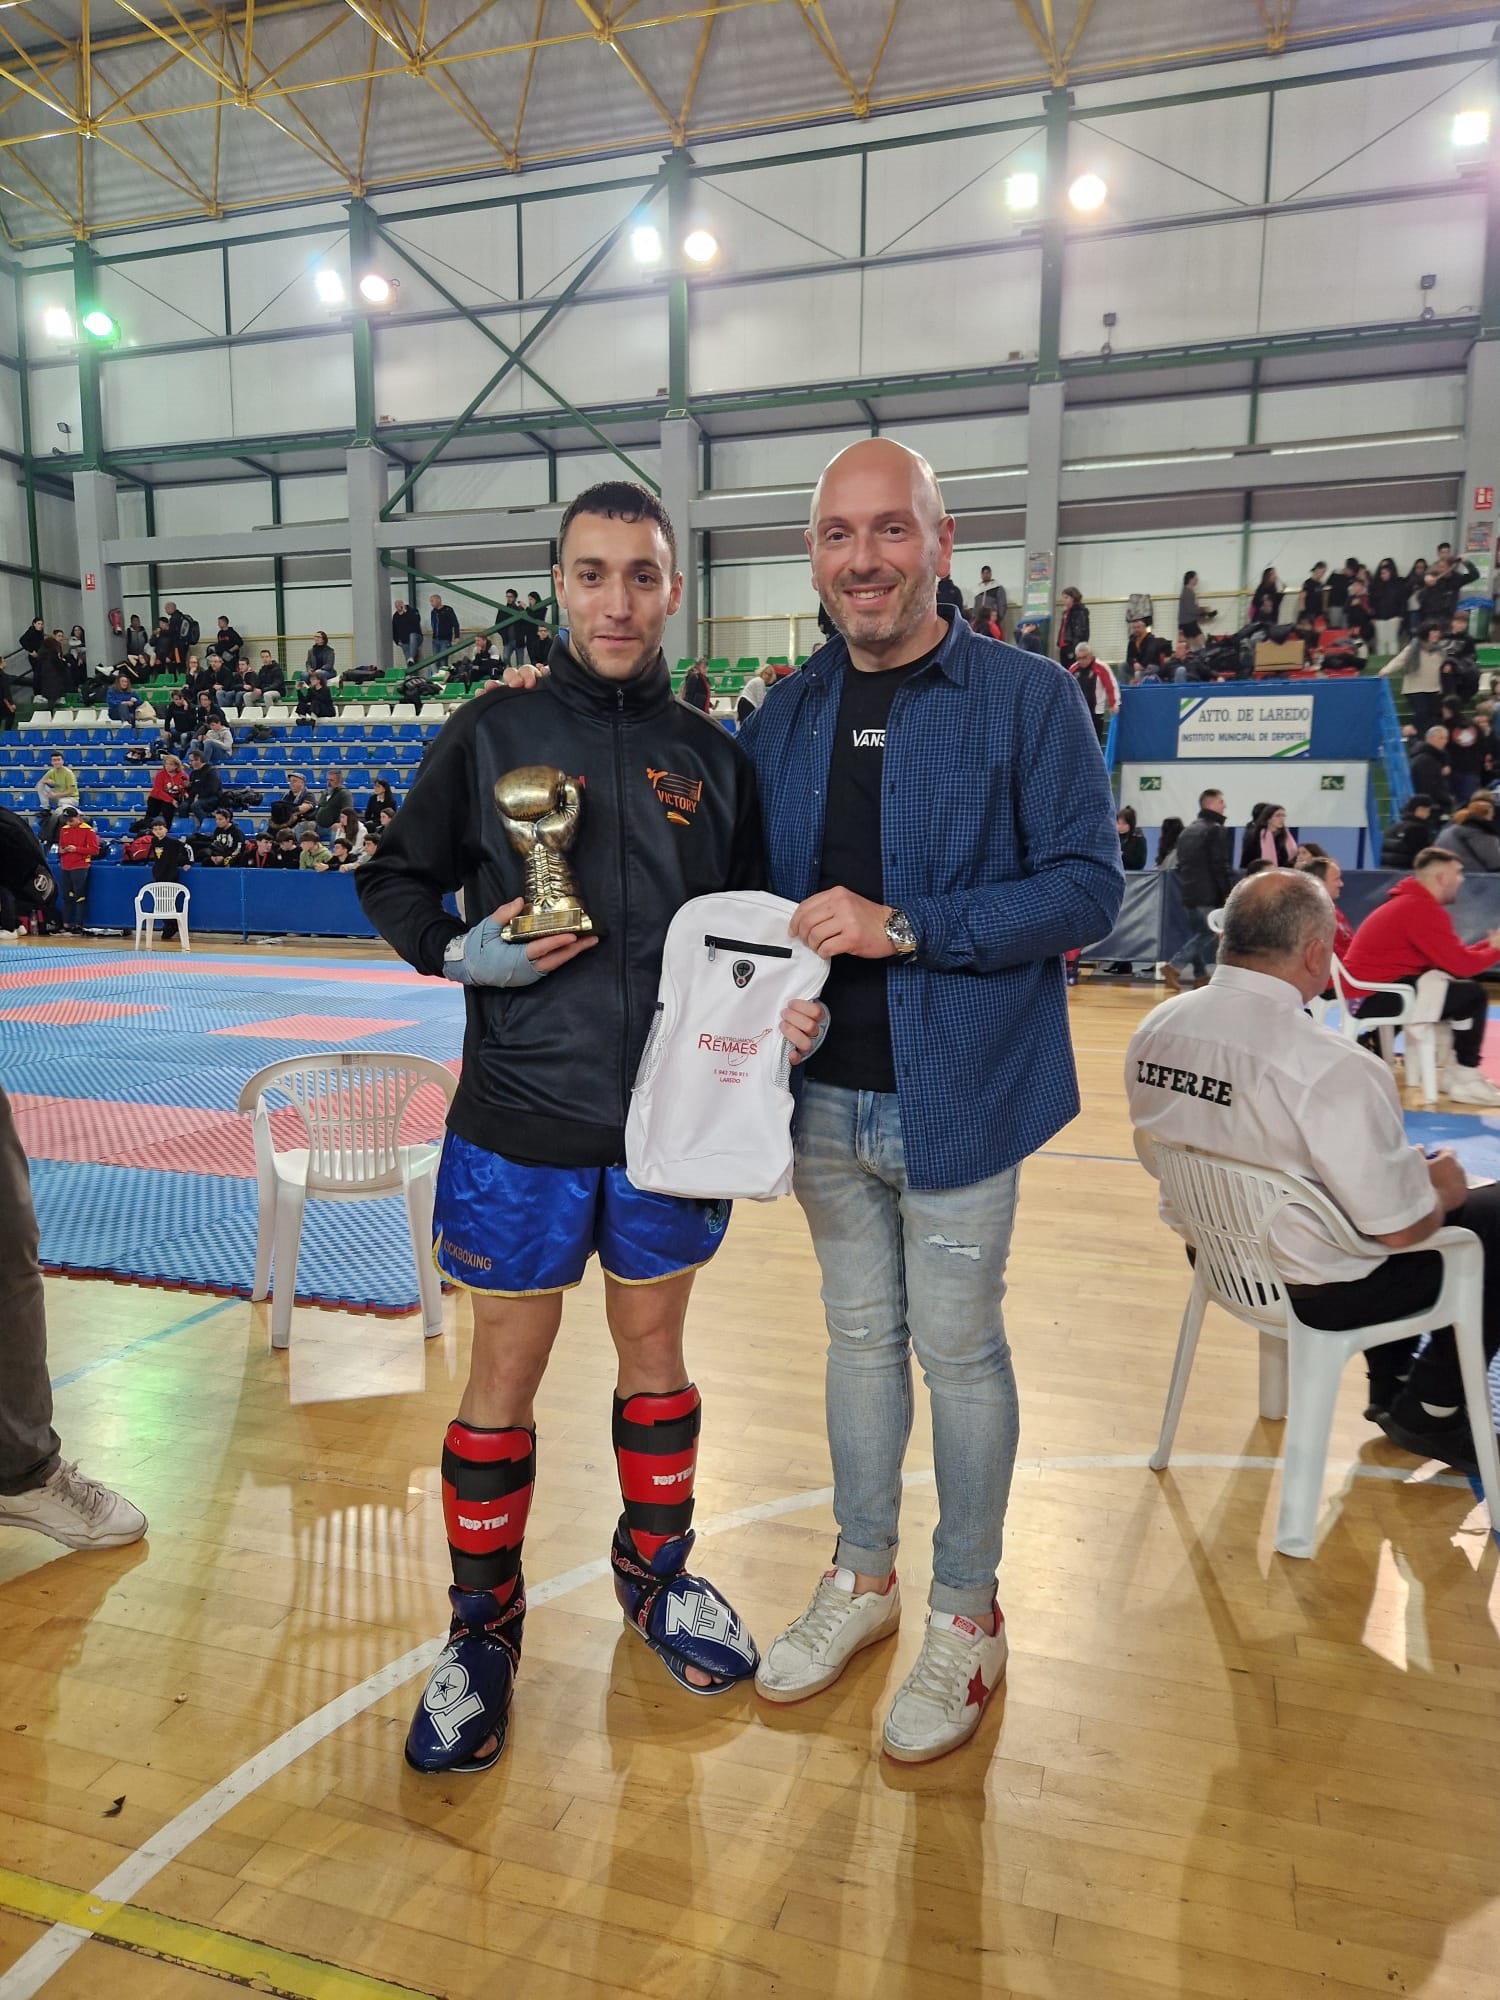 Sergio de Diego 2 oros en el Open Nacional Liga R2G de Kickboxing en Laredo, Santander